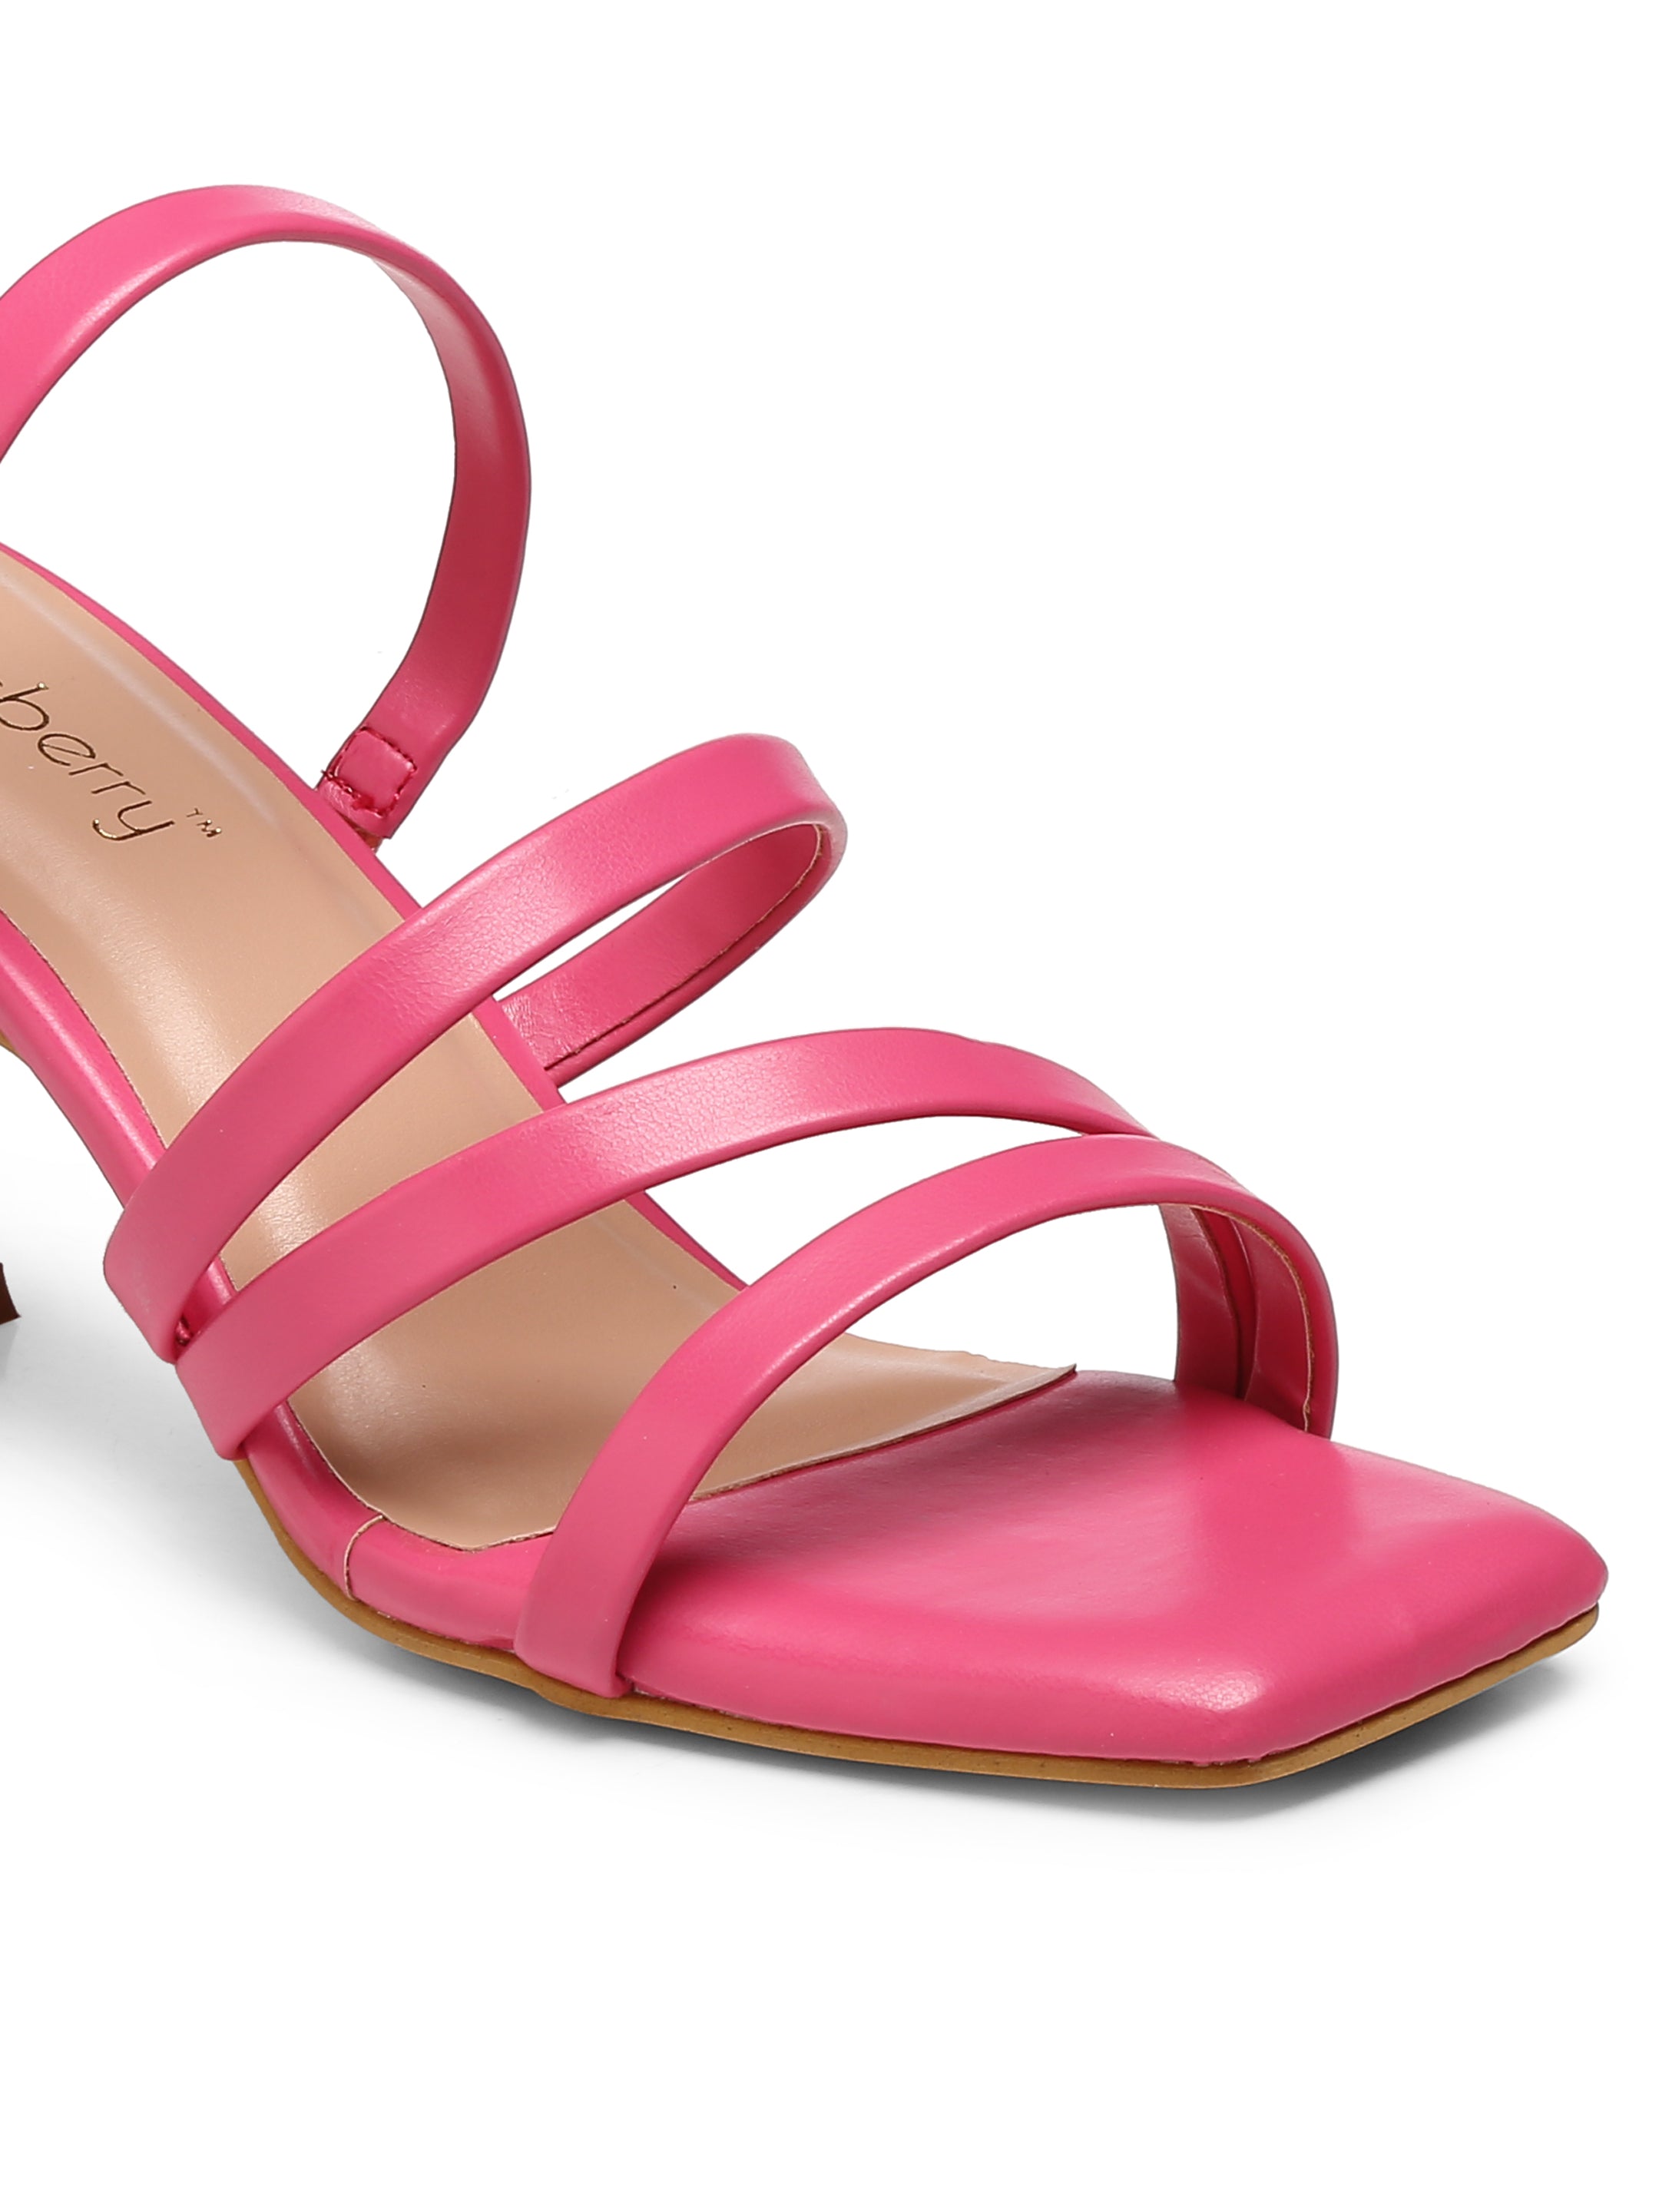 GNIST Pink Strappy Stilettoe Heel